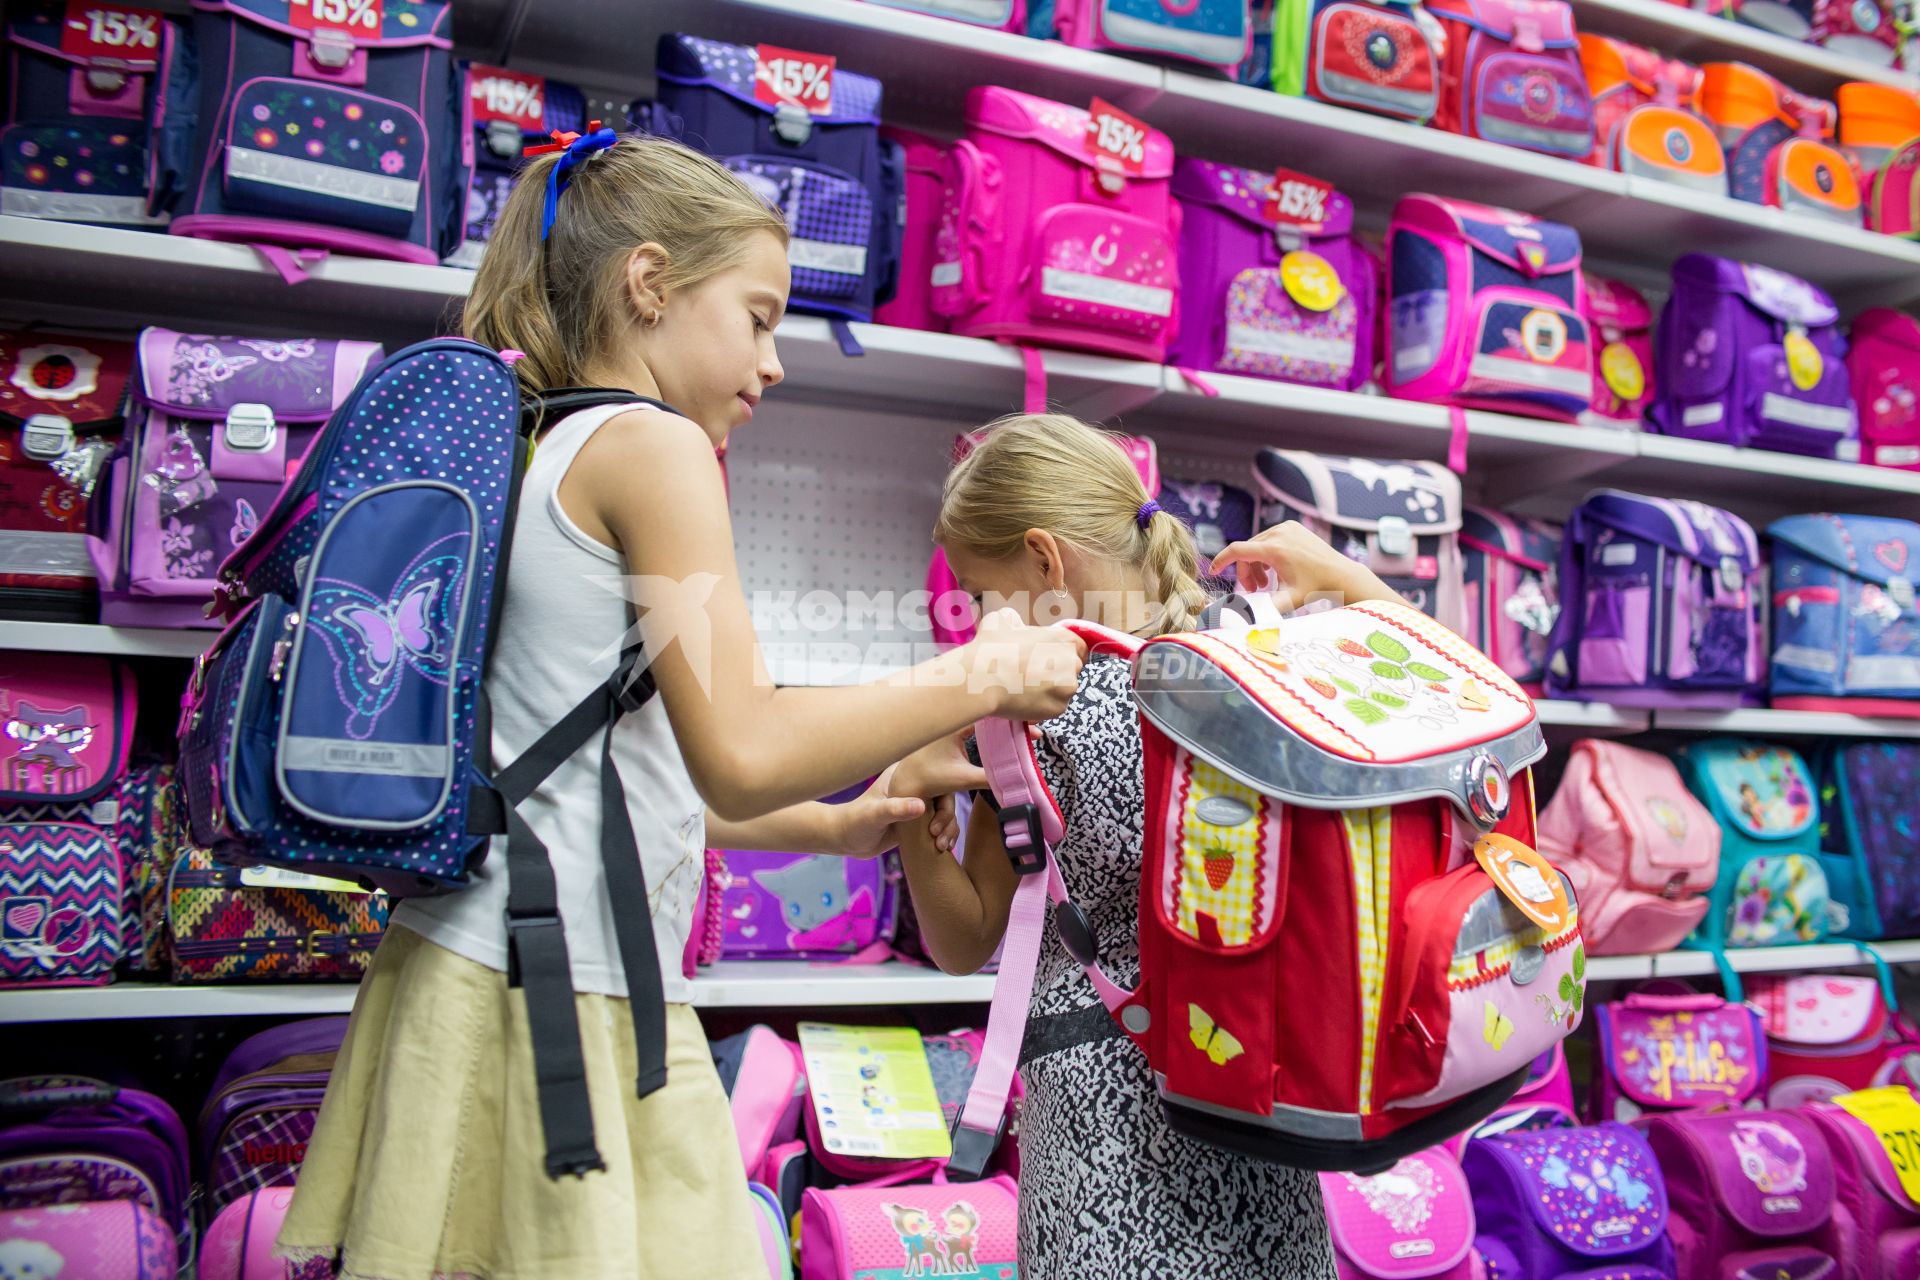 Челябинск. Девочки выбирают рюкзак в отделе школьных товаров.